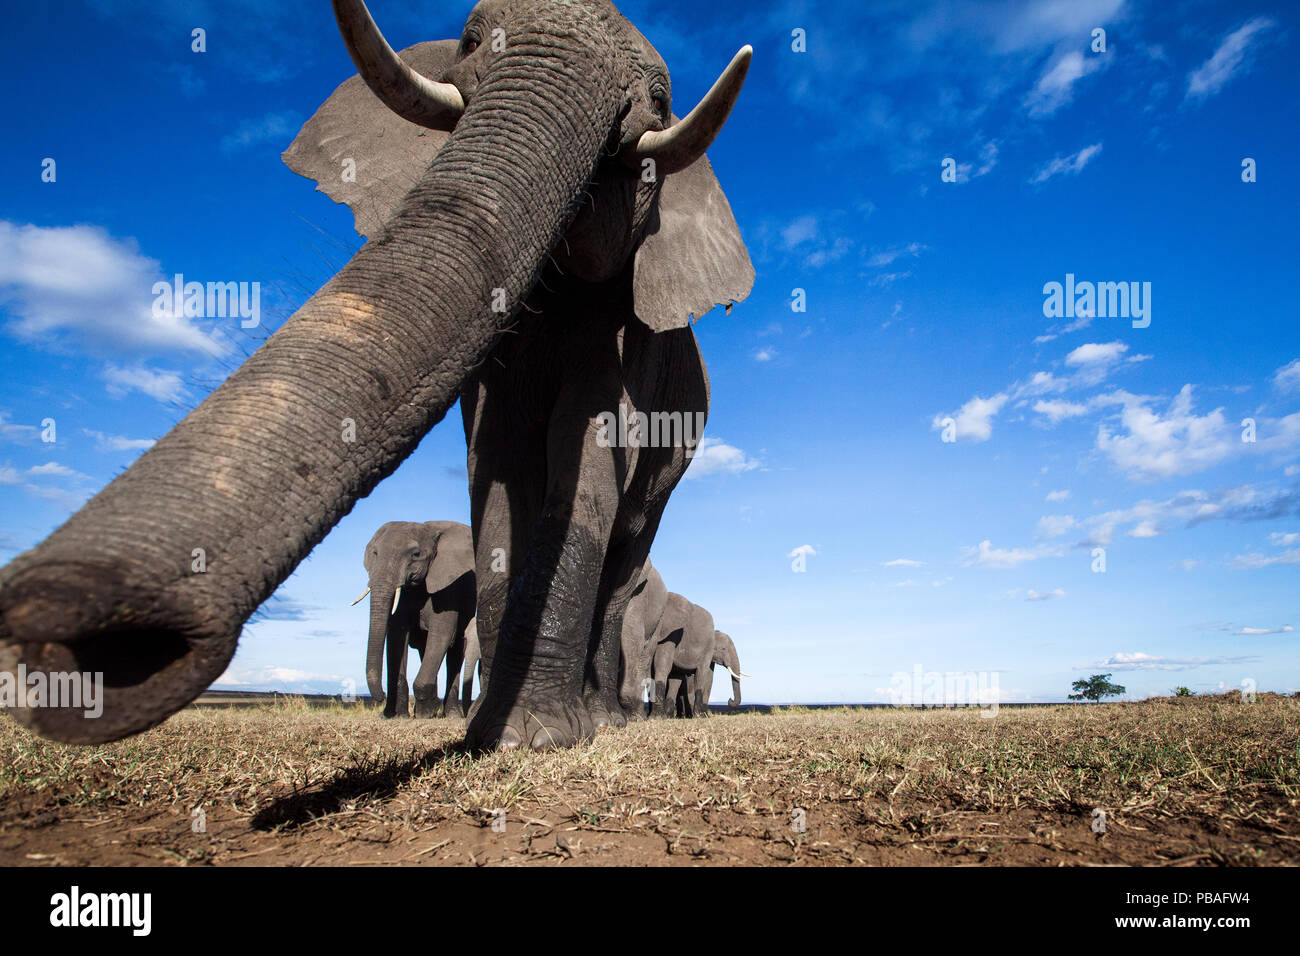 L'éléphant africain (Loxodonta africana) télédétection avec son tronc - Point de vue de l'appareil photo à distance. Masai Mara National Reserve, Kenya. Banque D'Images